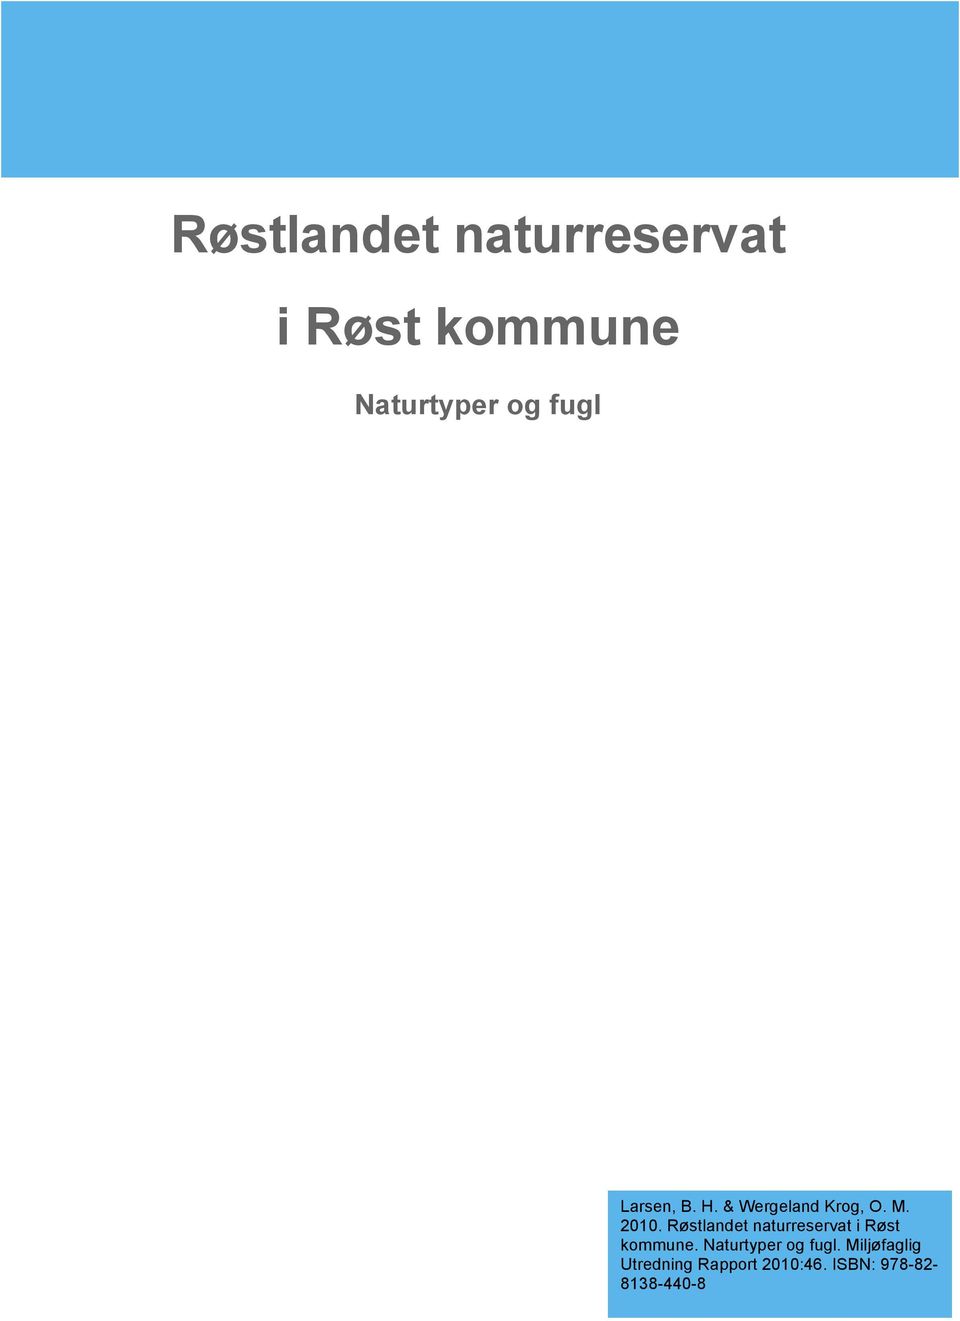 Røstlandet naturreservat i Røst kommune. Naturtyper og fugl.